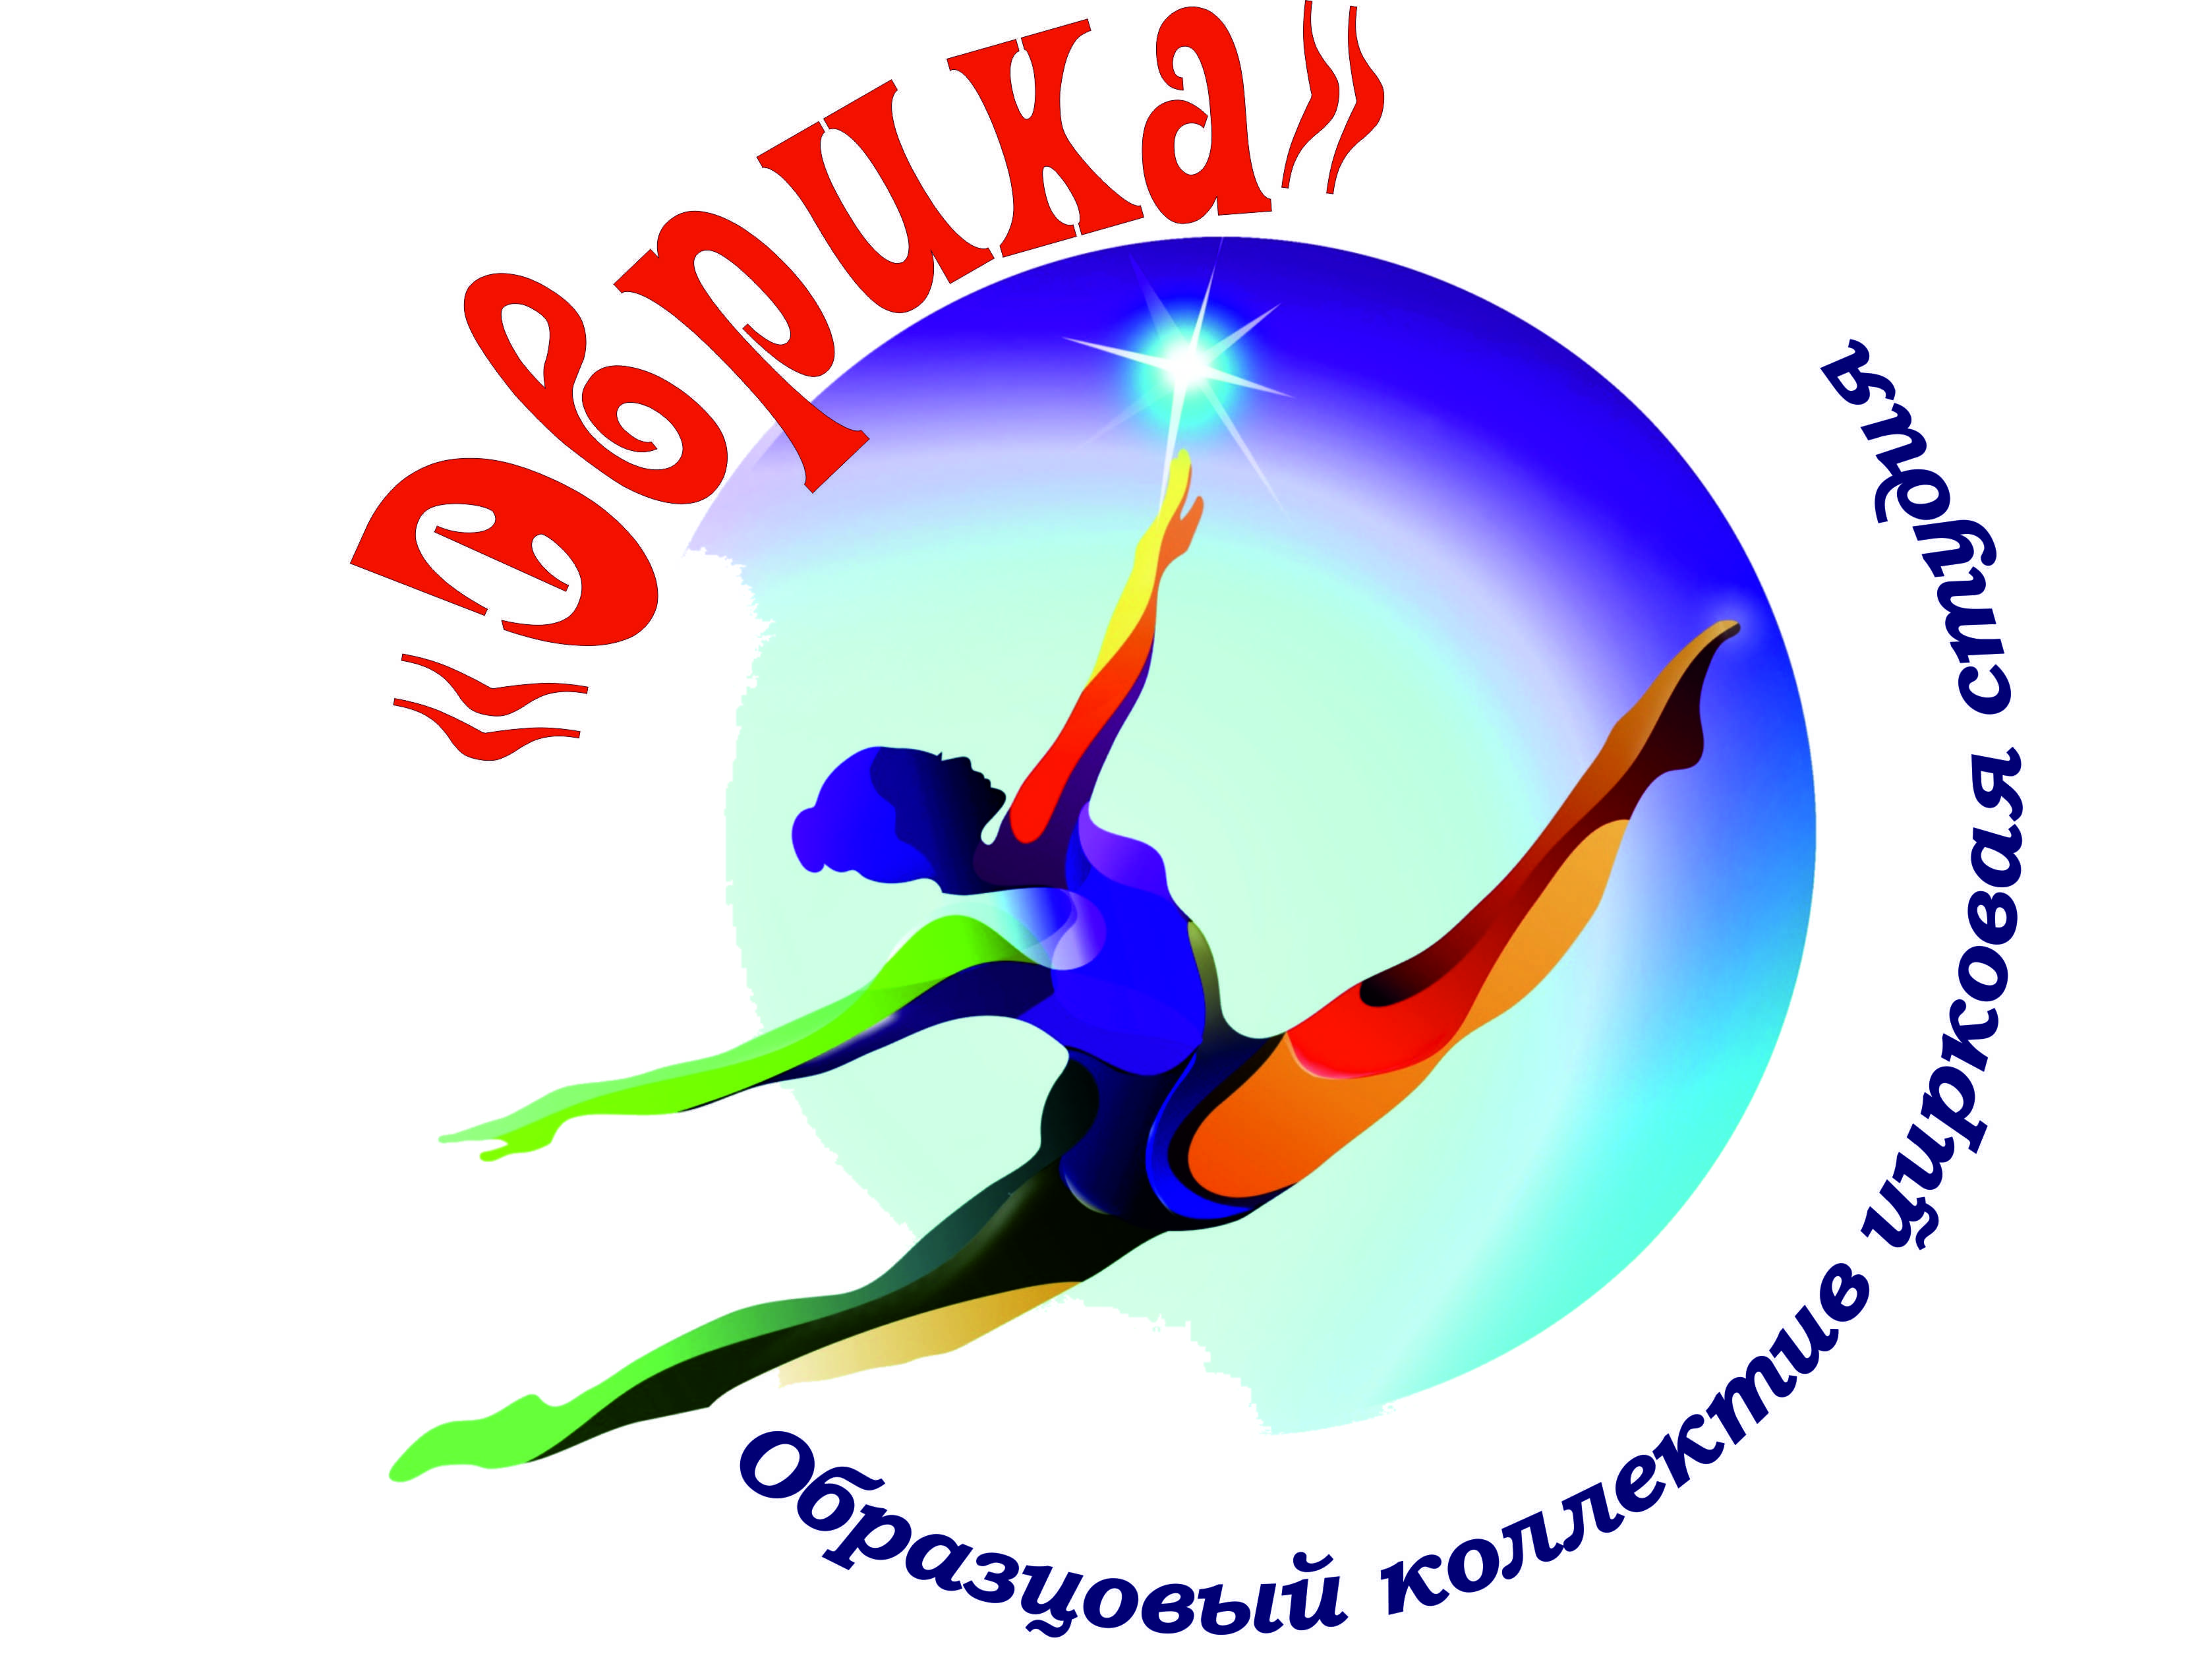 Образцовый коллектив цирковая студия "Эврика" (3-14 лет)